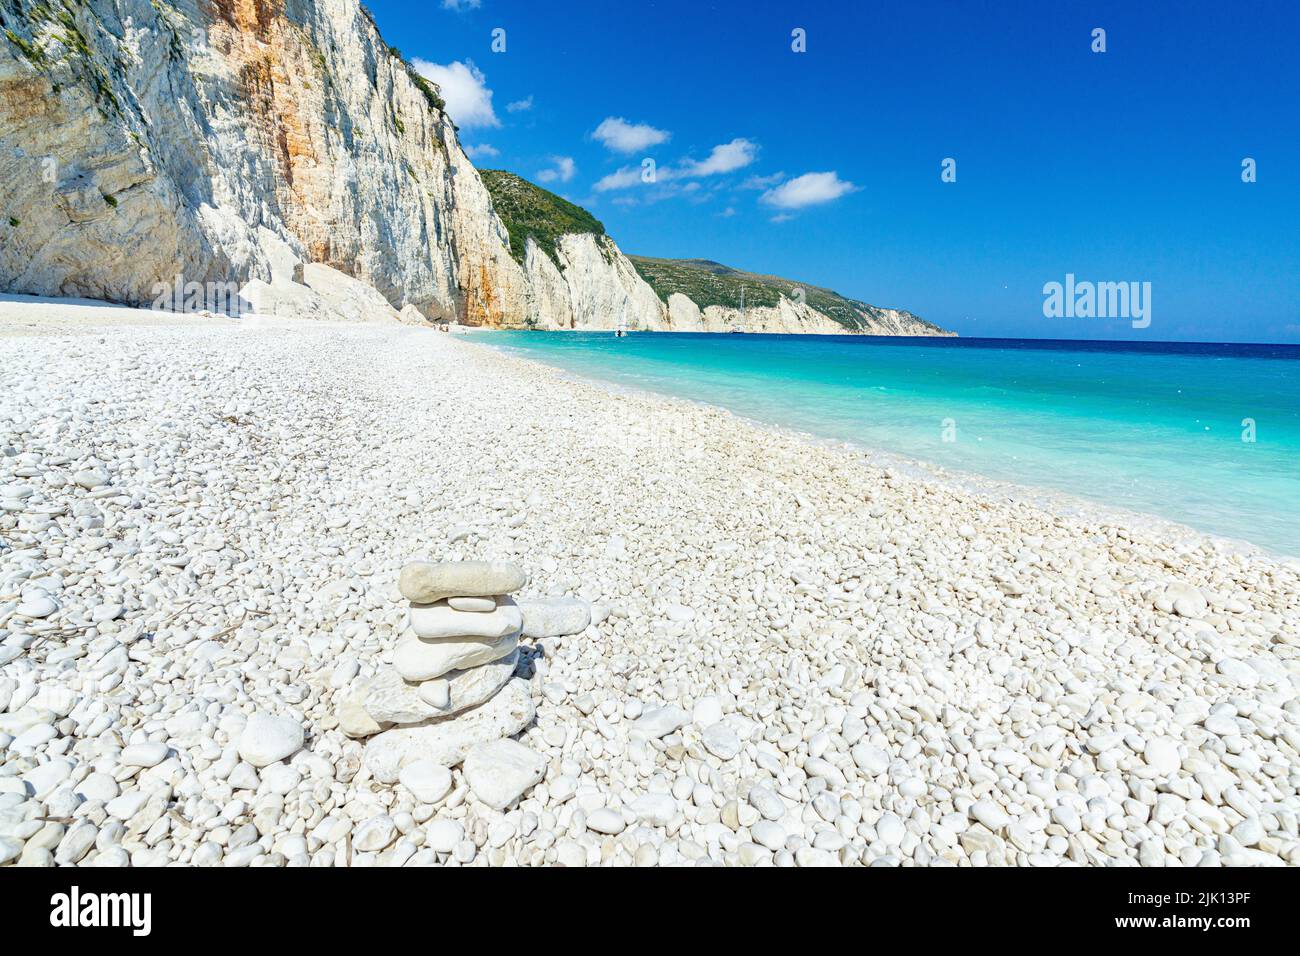 Soleil brillant sur les galets blancs de la plage de Fteri lavé par la mer turquoise, Kefalonia, Iles Ioniennes, Iles grecques, Grèce, Europe Banque D'Images